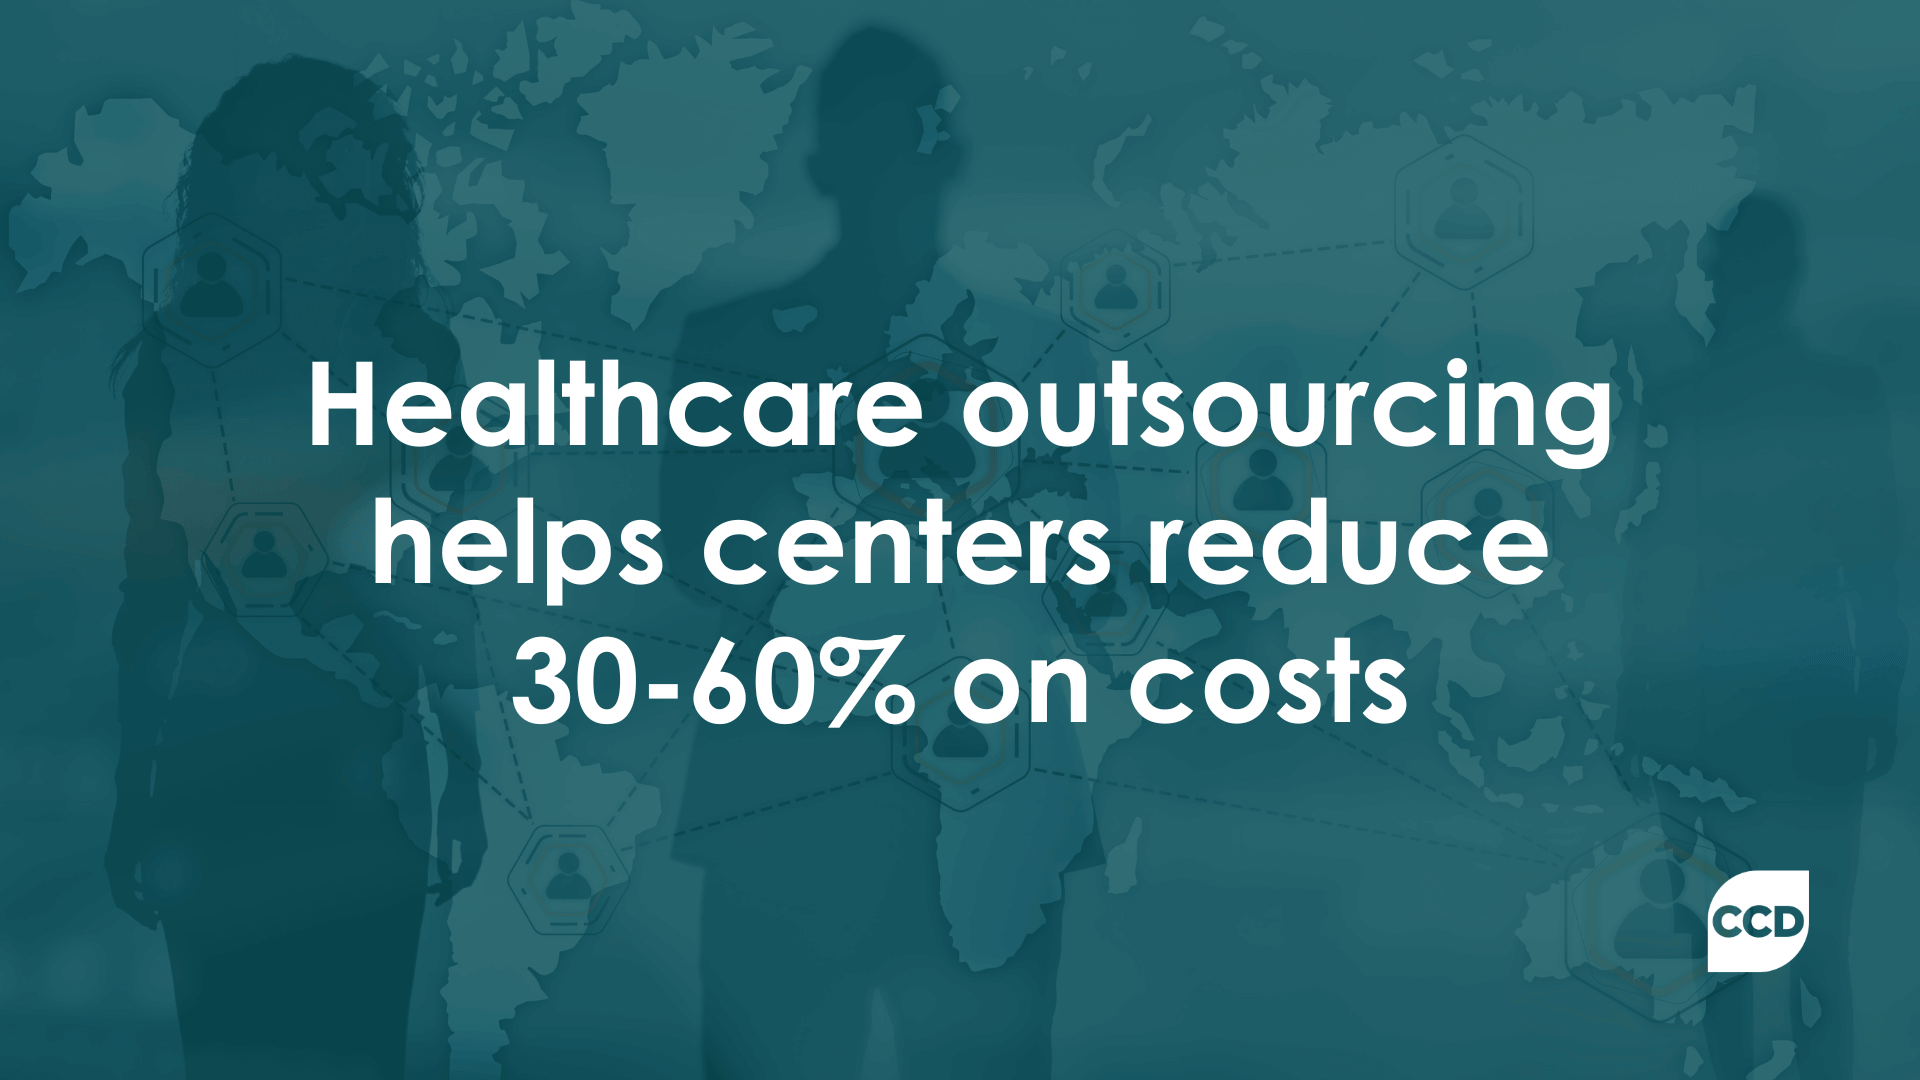 Healthcare call center outsourcing